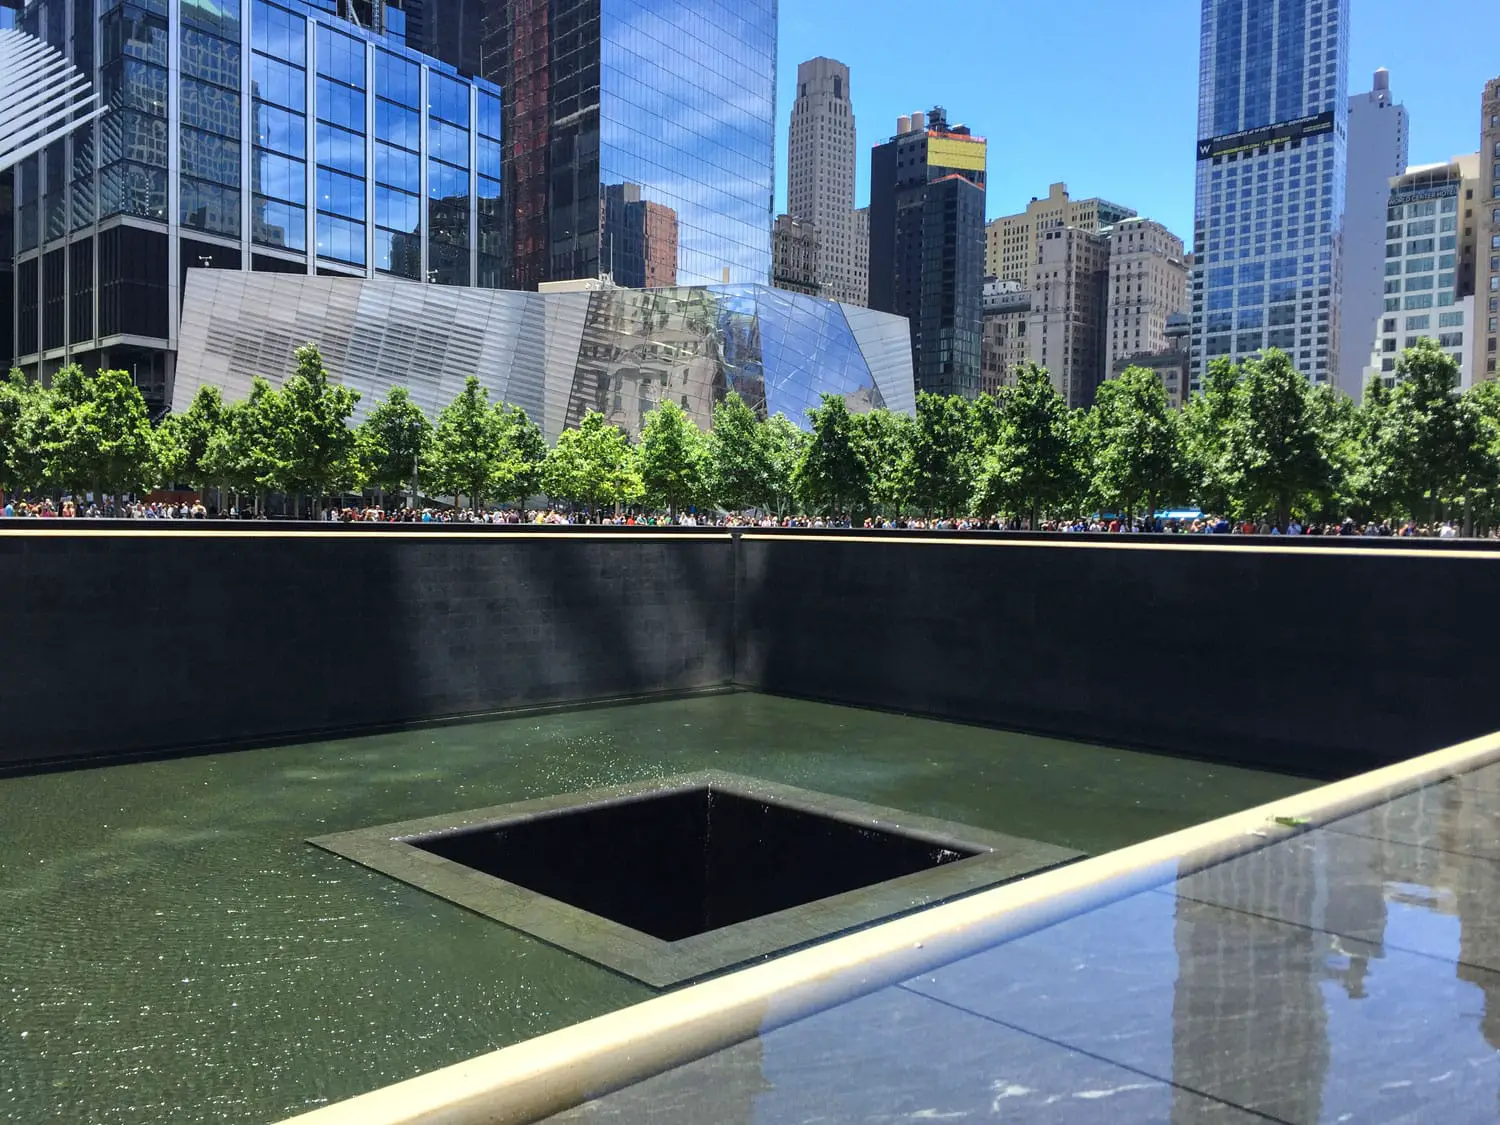 World trade Center memorial pond, New York City